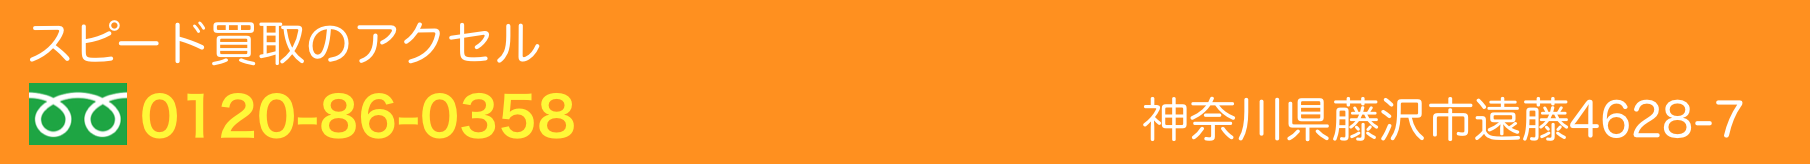 スピード買取のアクセル。コイン洗車、コインランドリー　きゃめる藤沢遠藤店　神奈川県藤沢市遠藤4628-7　TEL03-5489-3003